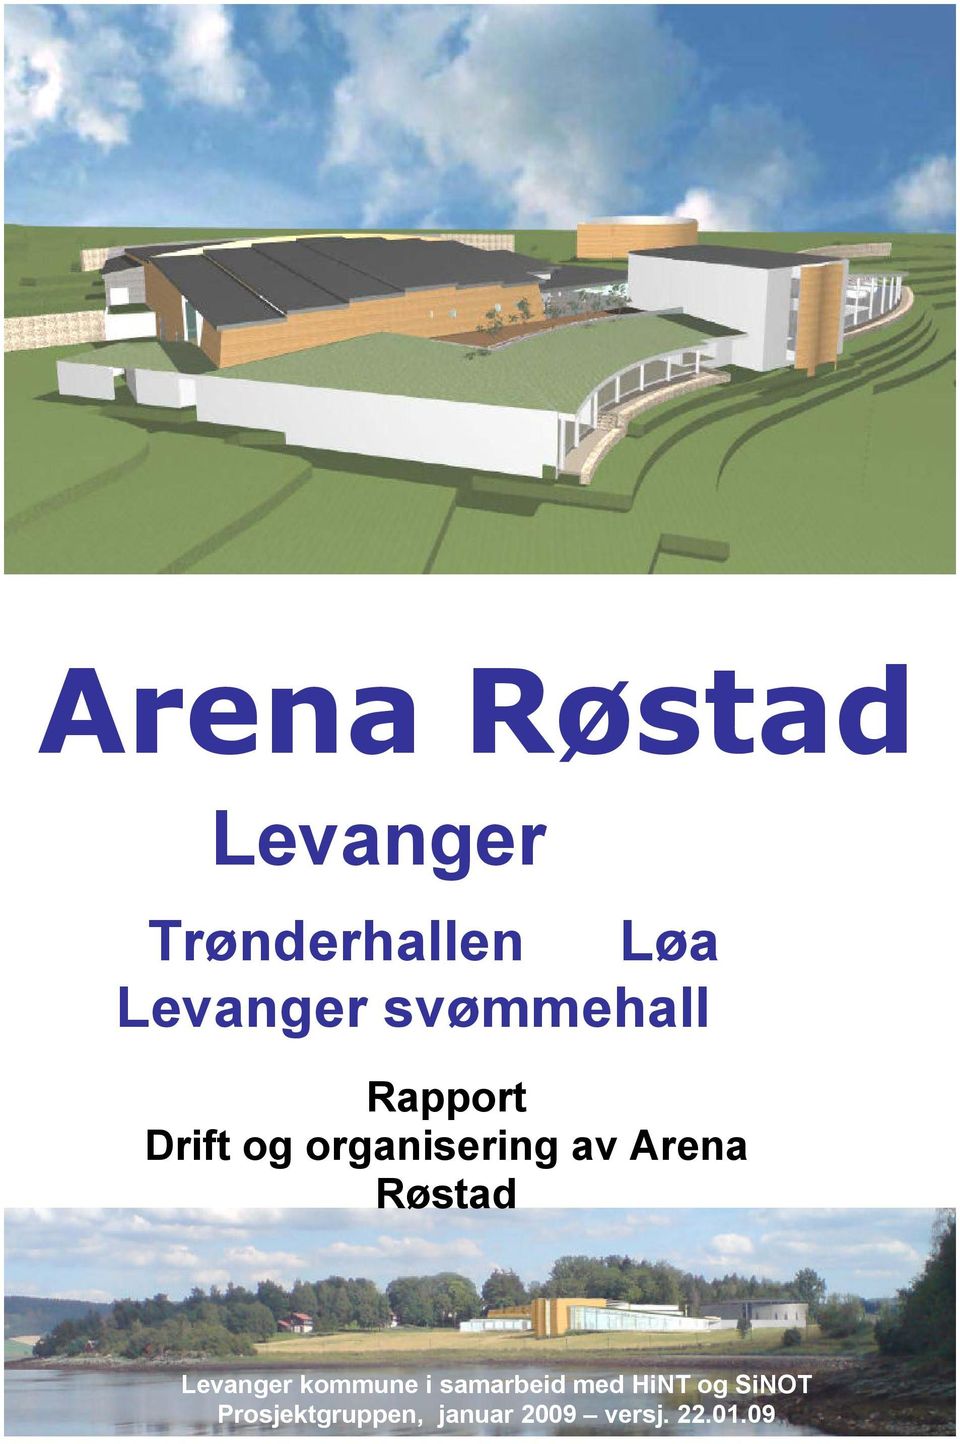 Røstad Levanger kommune i samarbeid med HiNT og